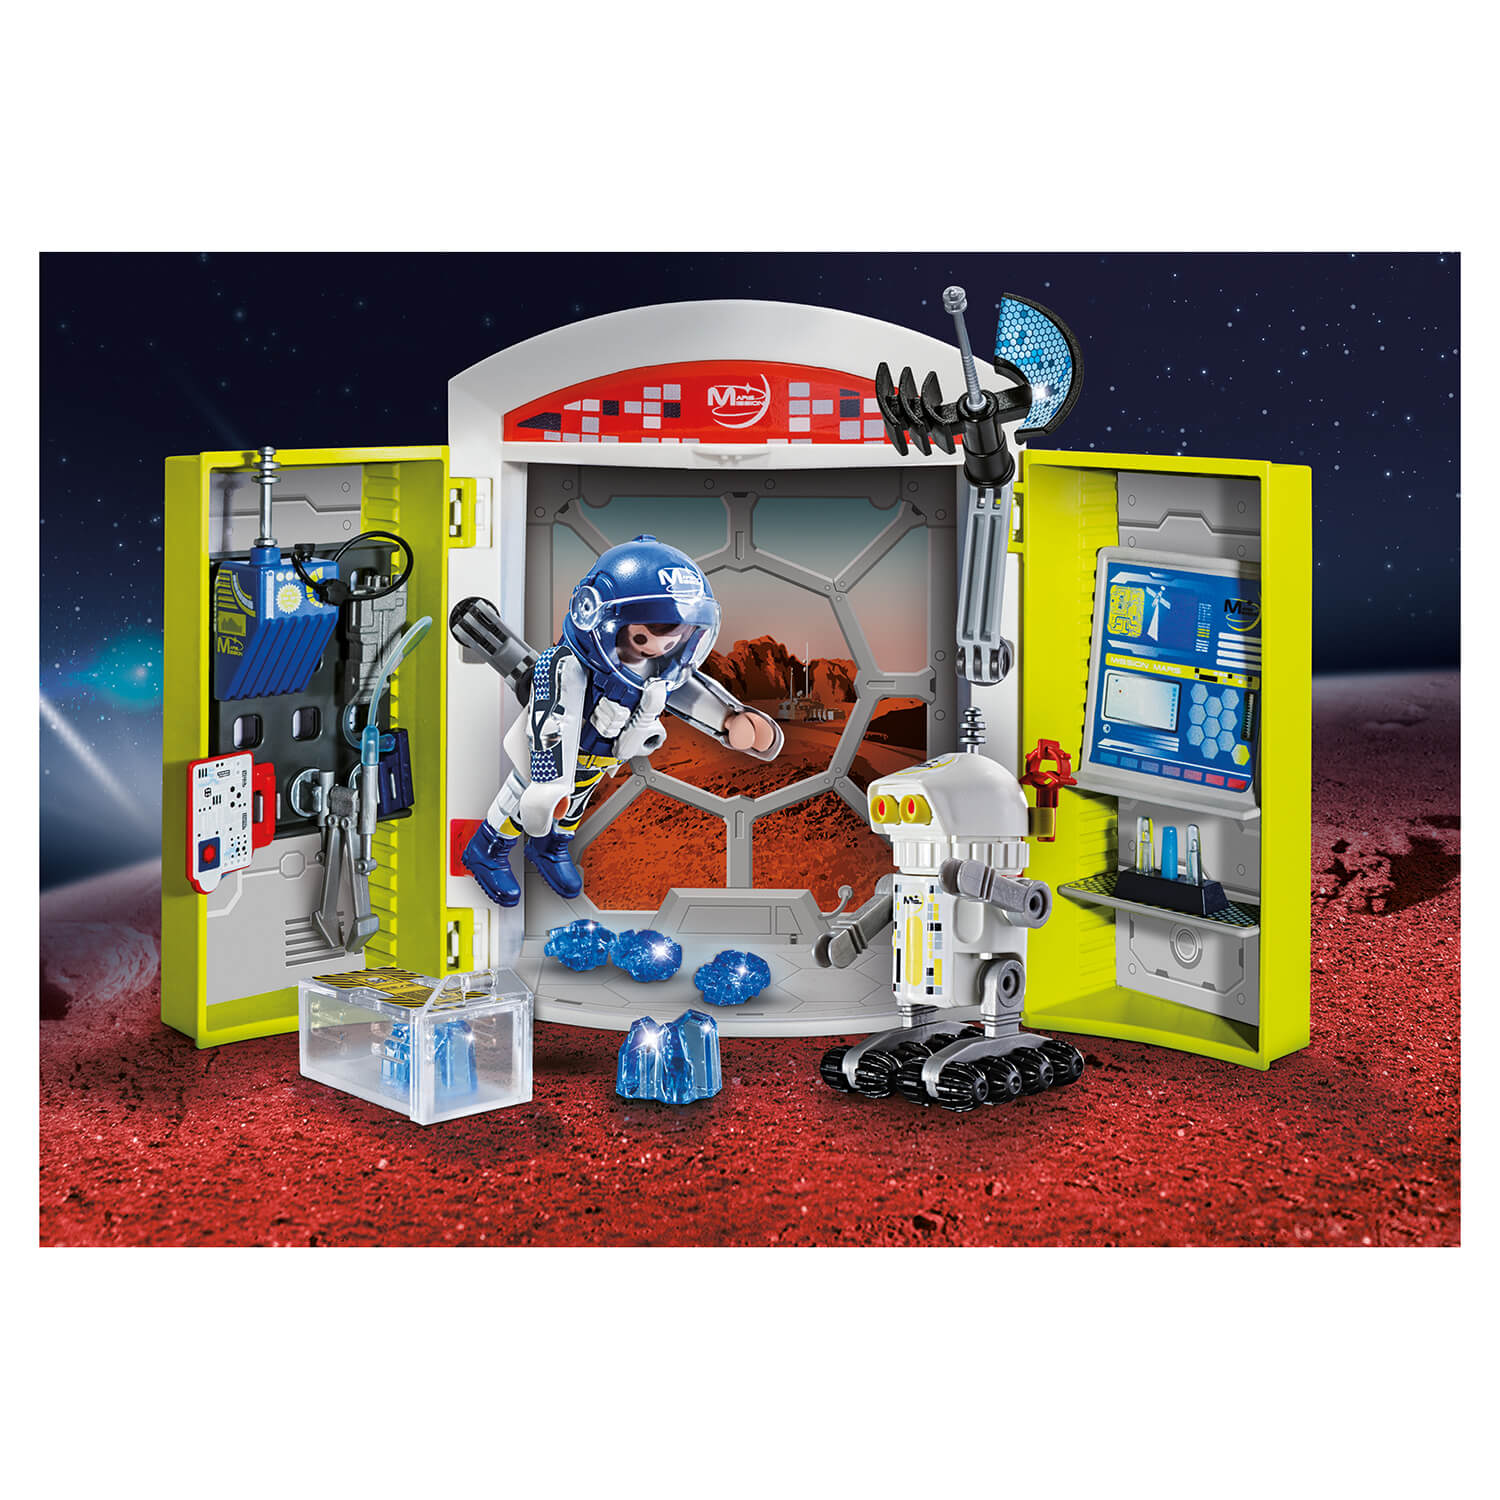 PLAYMOBIL Play Box Mars Mission Play Box (70110)